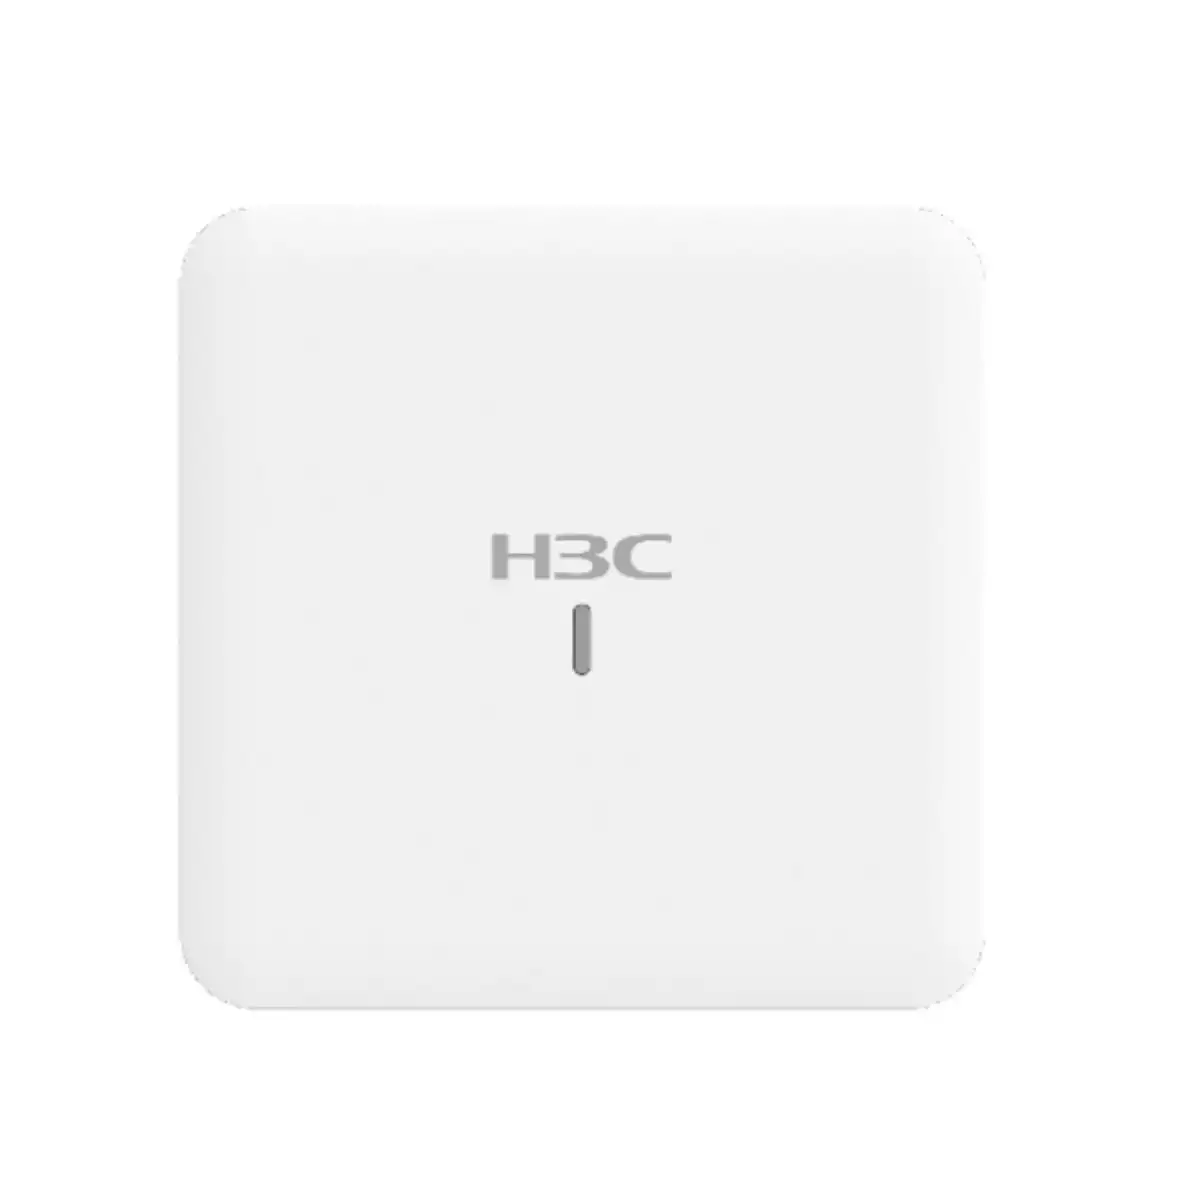 Bộ phát wifi 6 trong nhà H3C WA6120  tốc độ 1.775Gbps, kết nối đồng thời 100 người dùng, 8 SSID